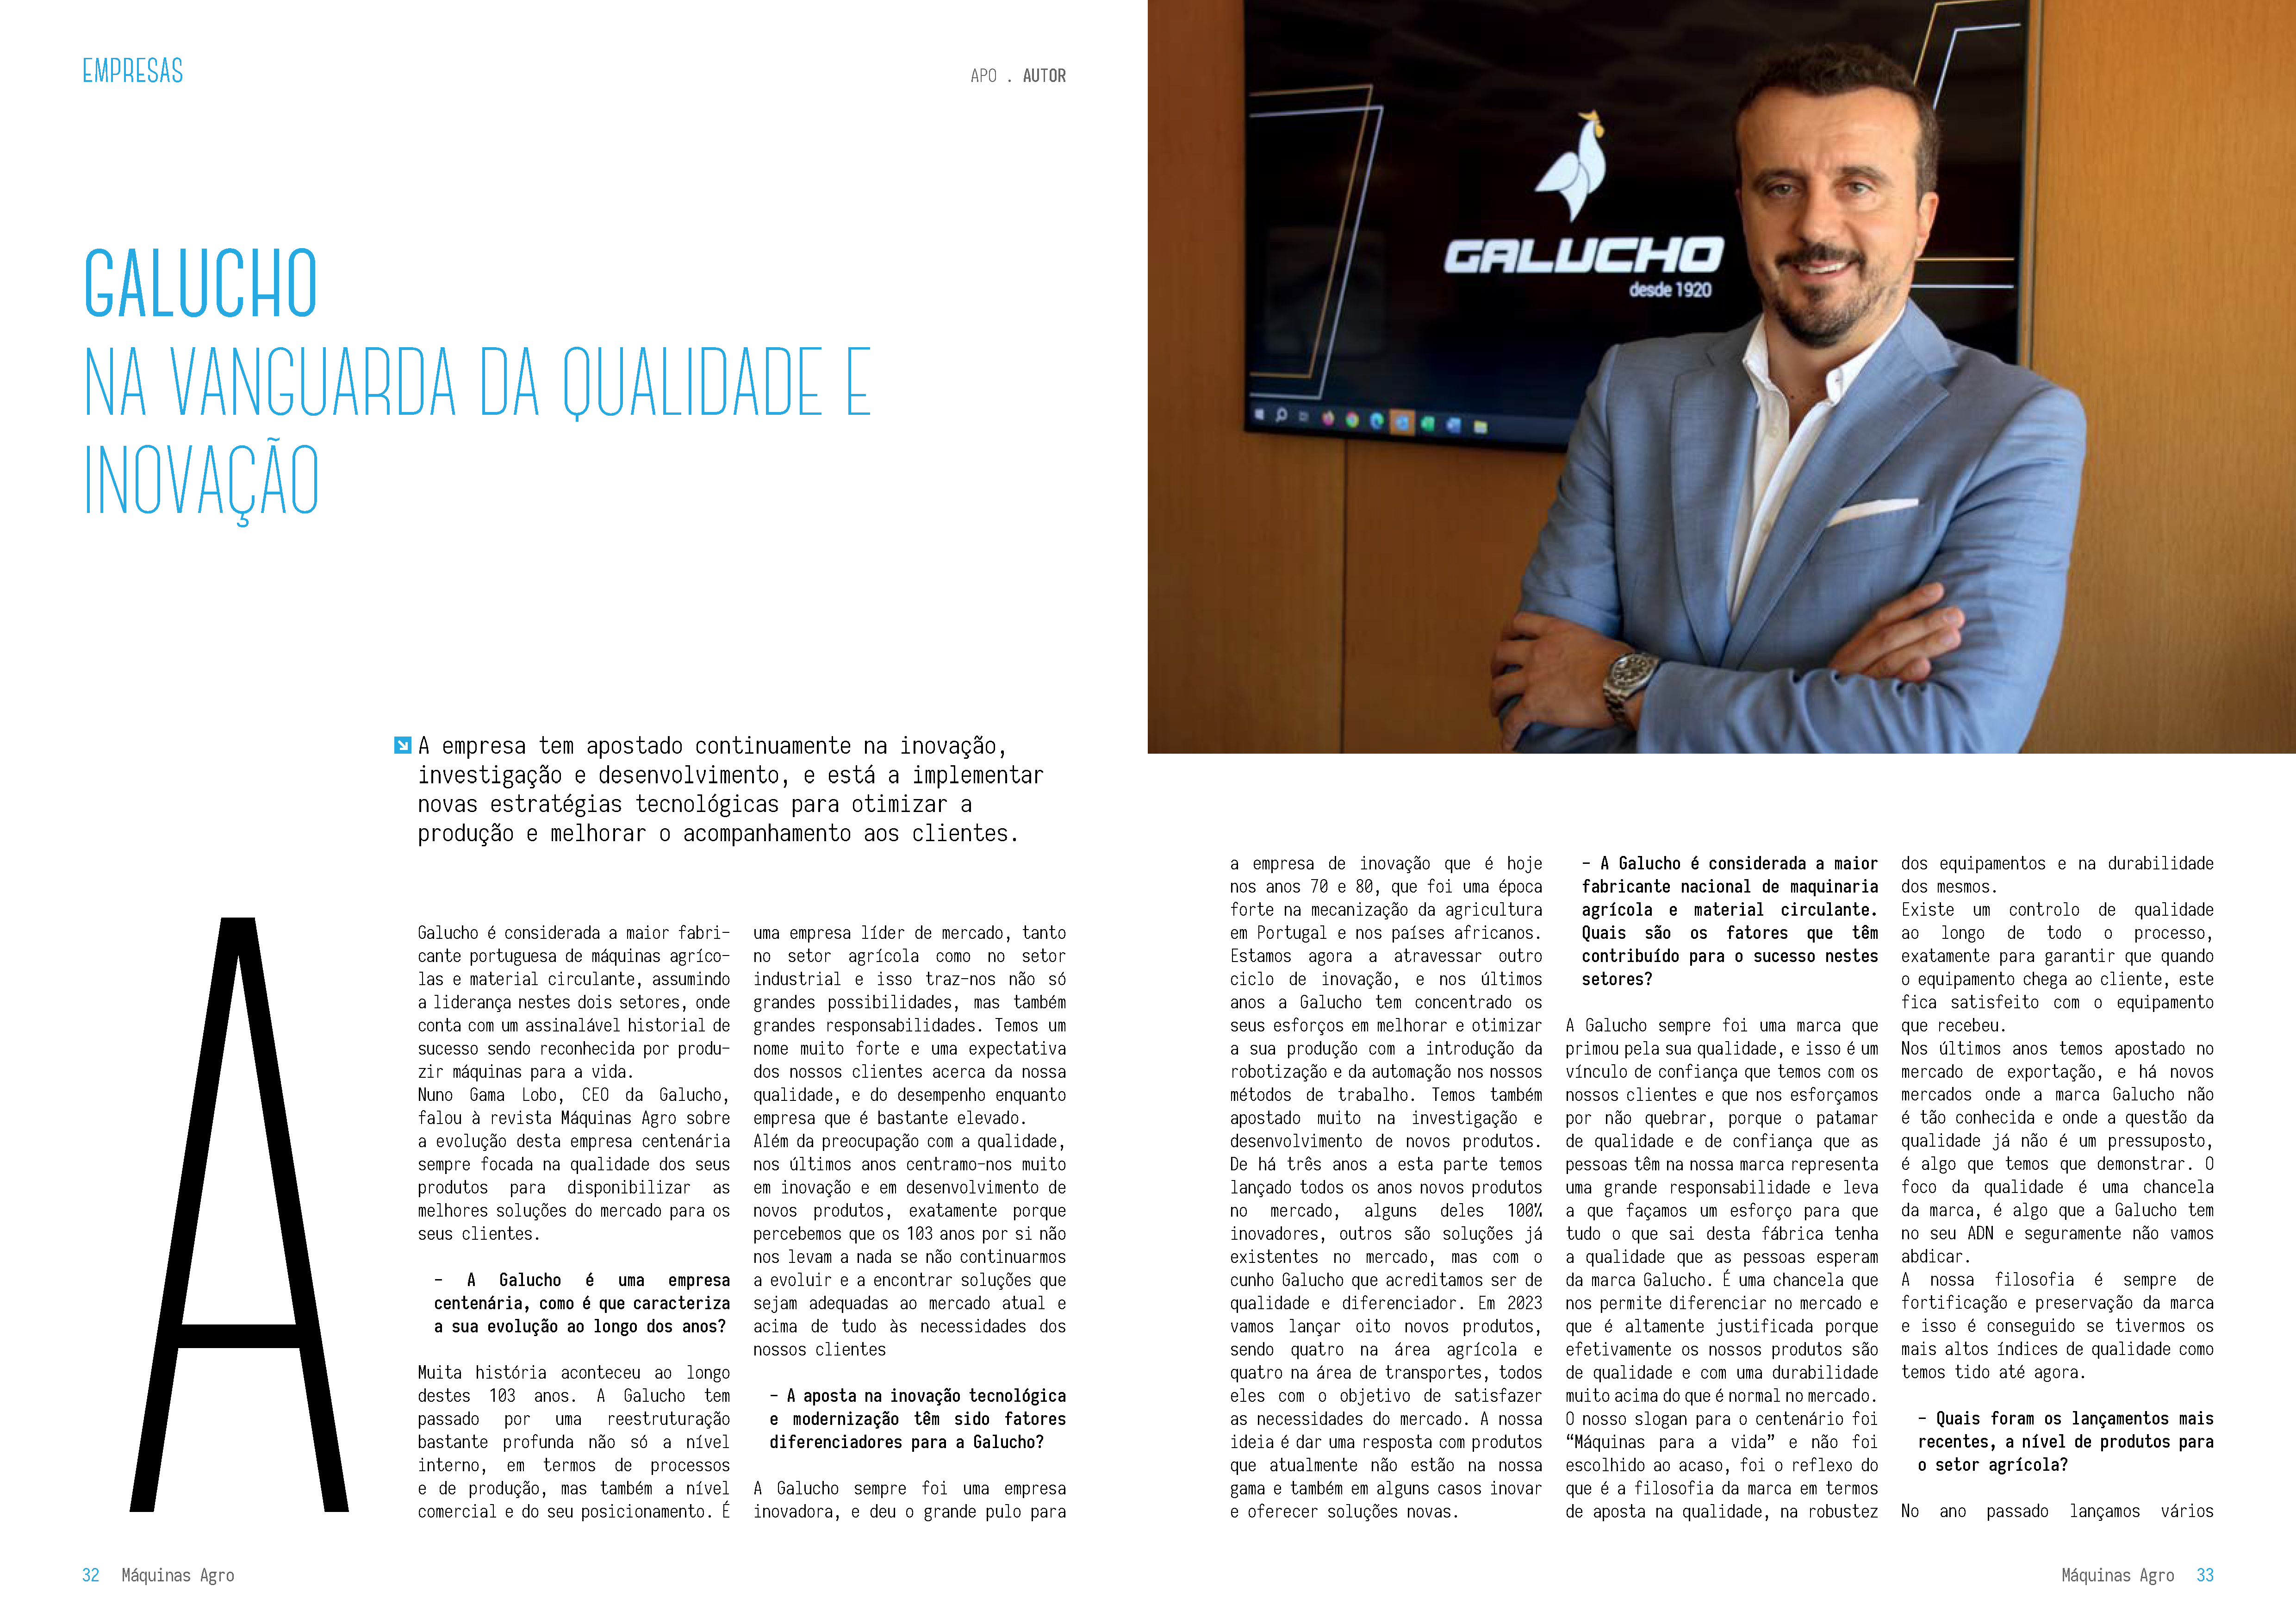 Galucho marca presença na edição agosto/setembro da revista Máquinas AGRO